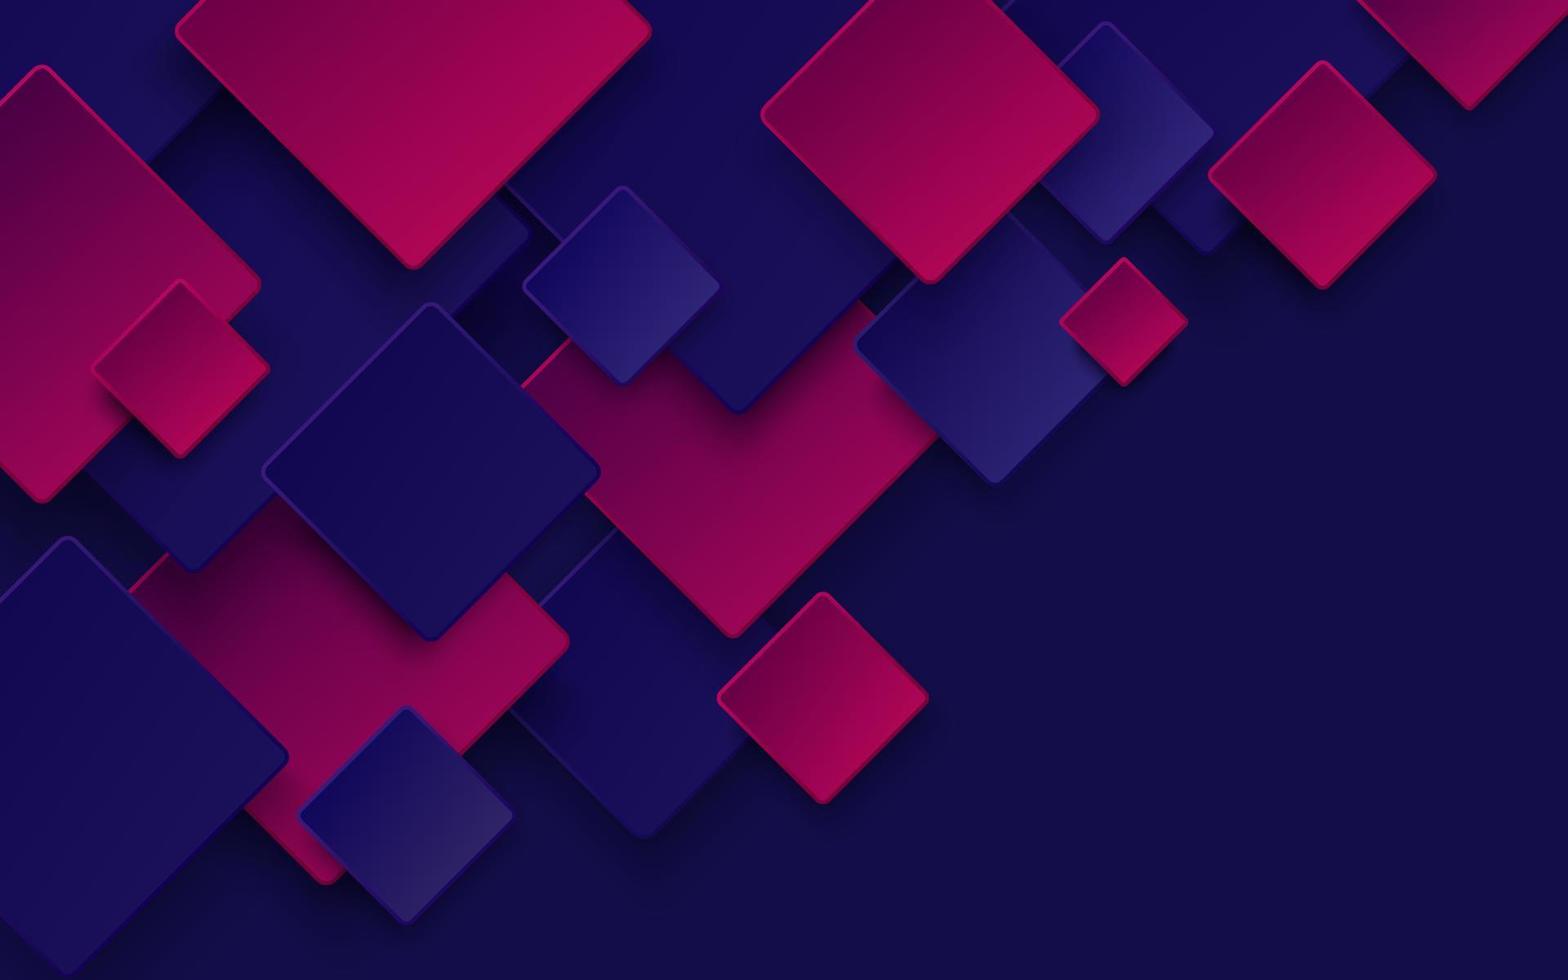 padrão de sobreposição quadrado de cor roxa azul escuro e rosa moderno no fundo com sombra. forma geométrica abstrata de cor na moda com espaço de cópia. conceito futurista e de tecnologia. vetor eps10.